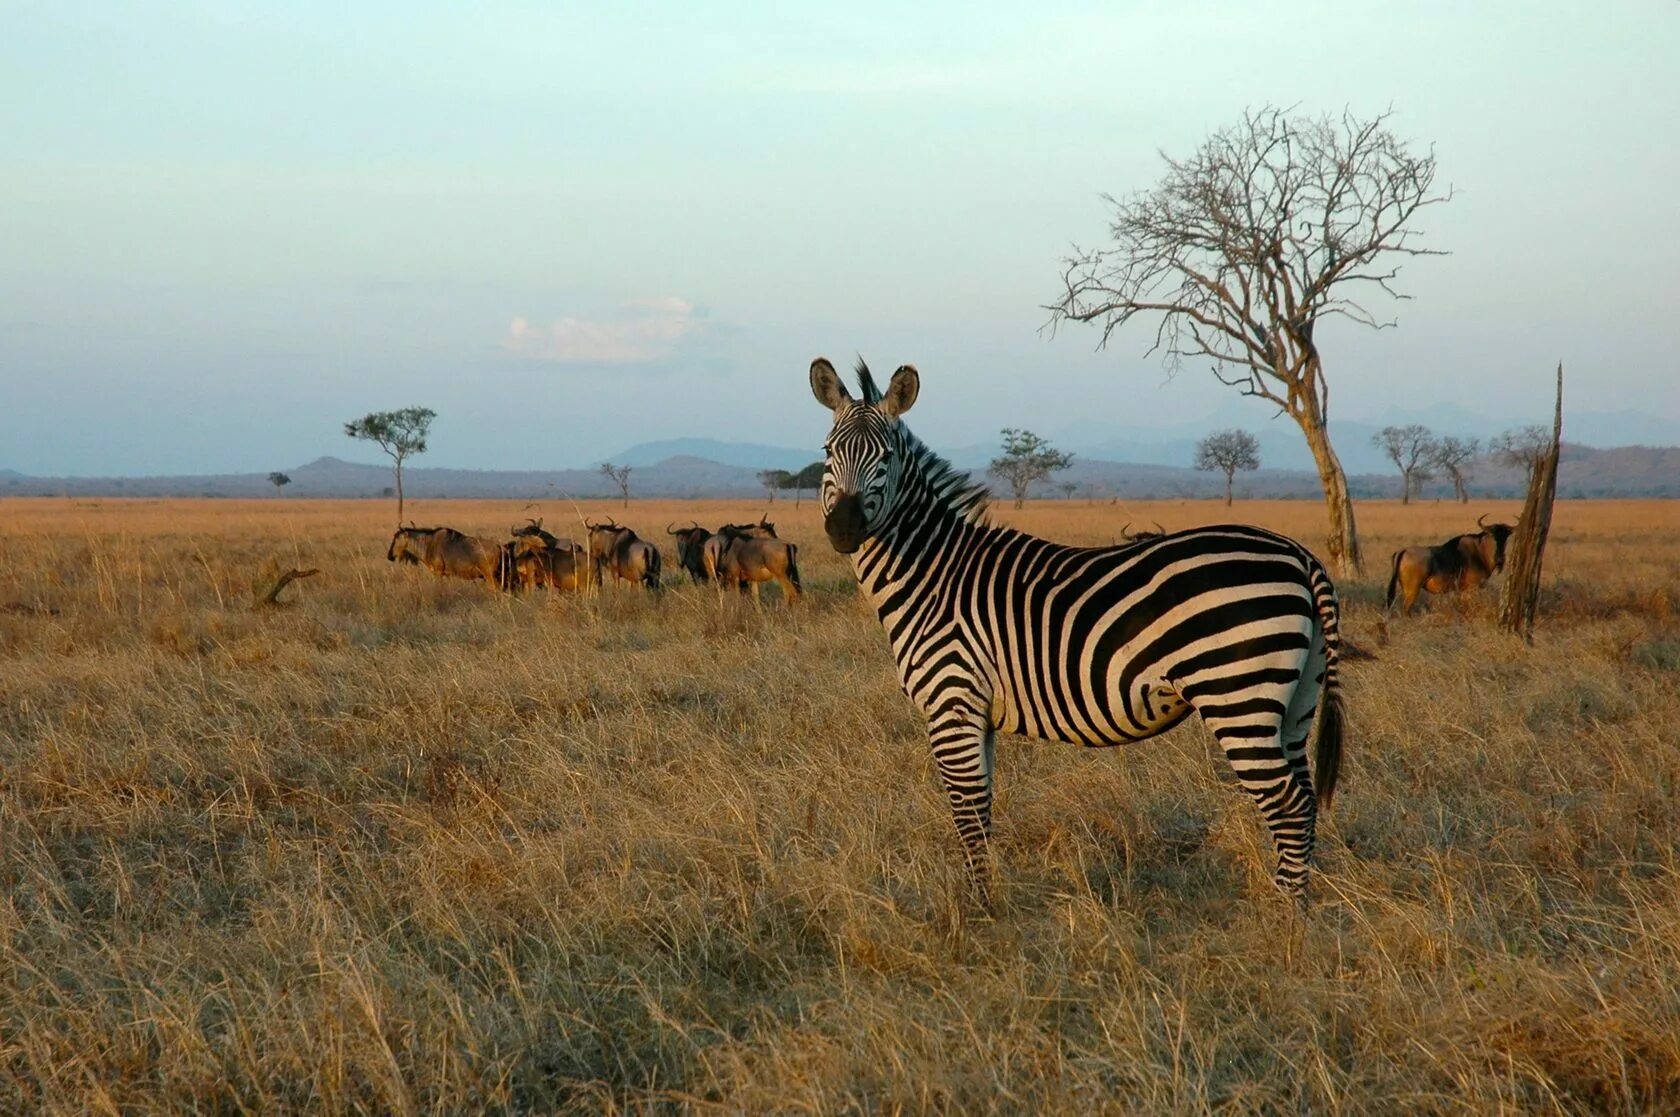 Саванной восточной африки. Парк Микуми Танзания. Национальный парк Микуми в Танзании. Сафари Микуми Танзания. Сафари в национальном парке Микуми.